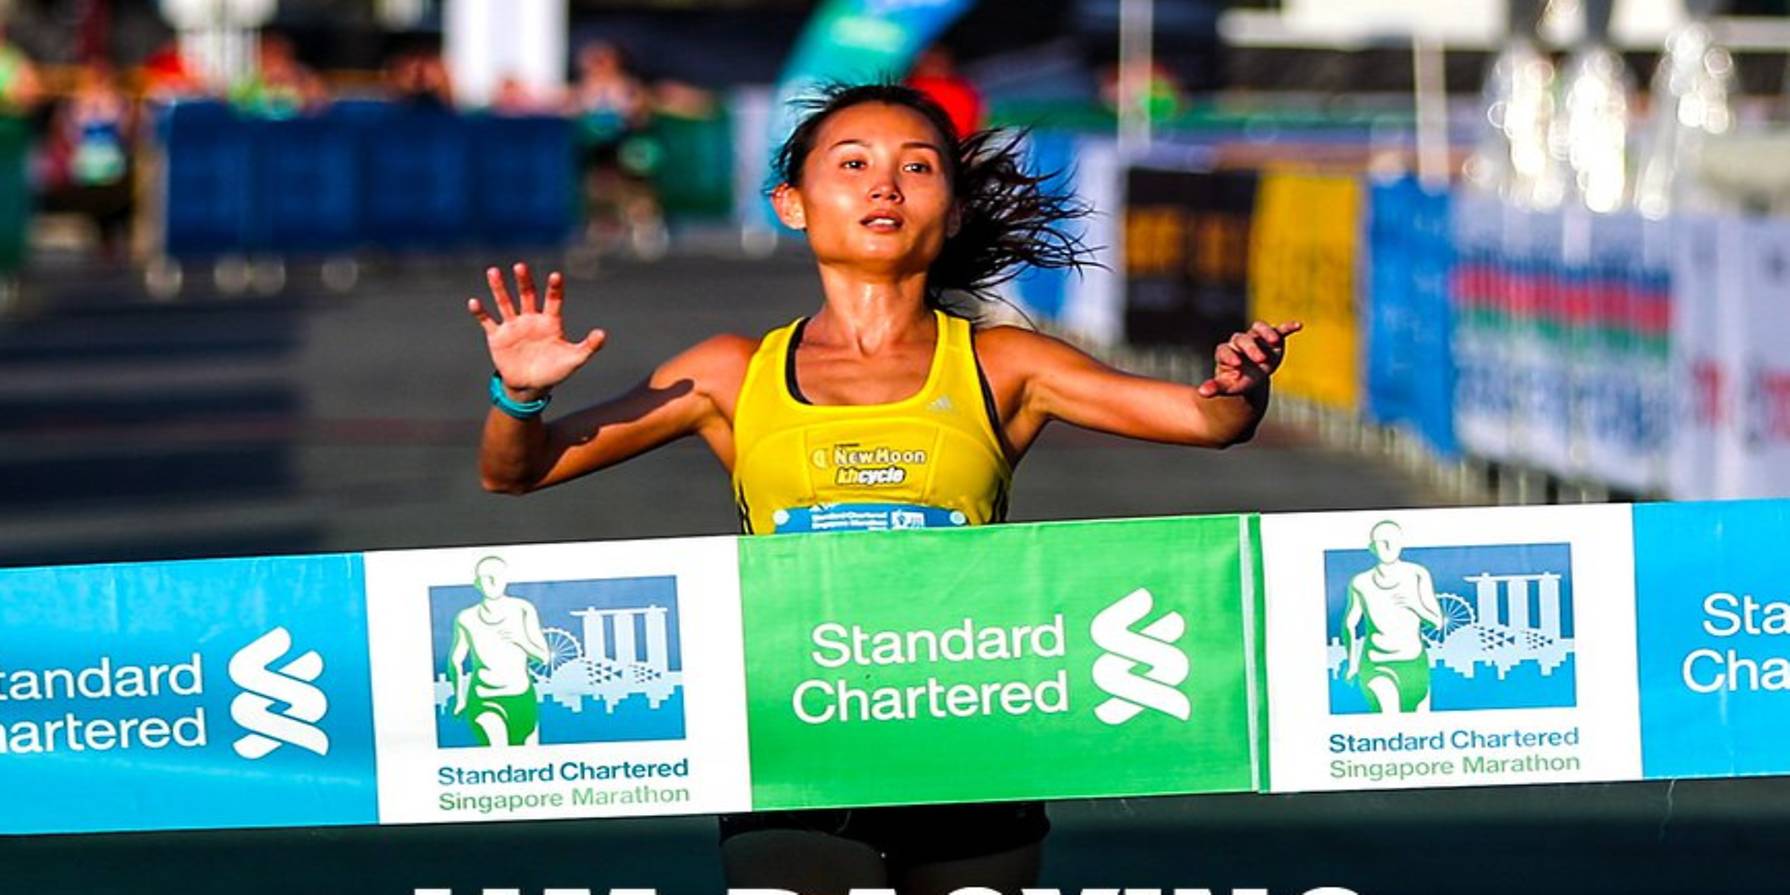 Á quân Singapore Marathon bị cấm thi đấu, tước huy chương, đòi tiền thưởng vì doping